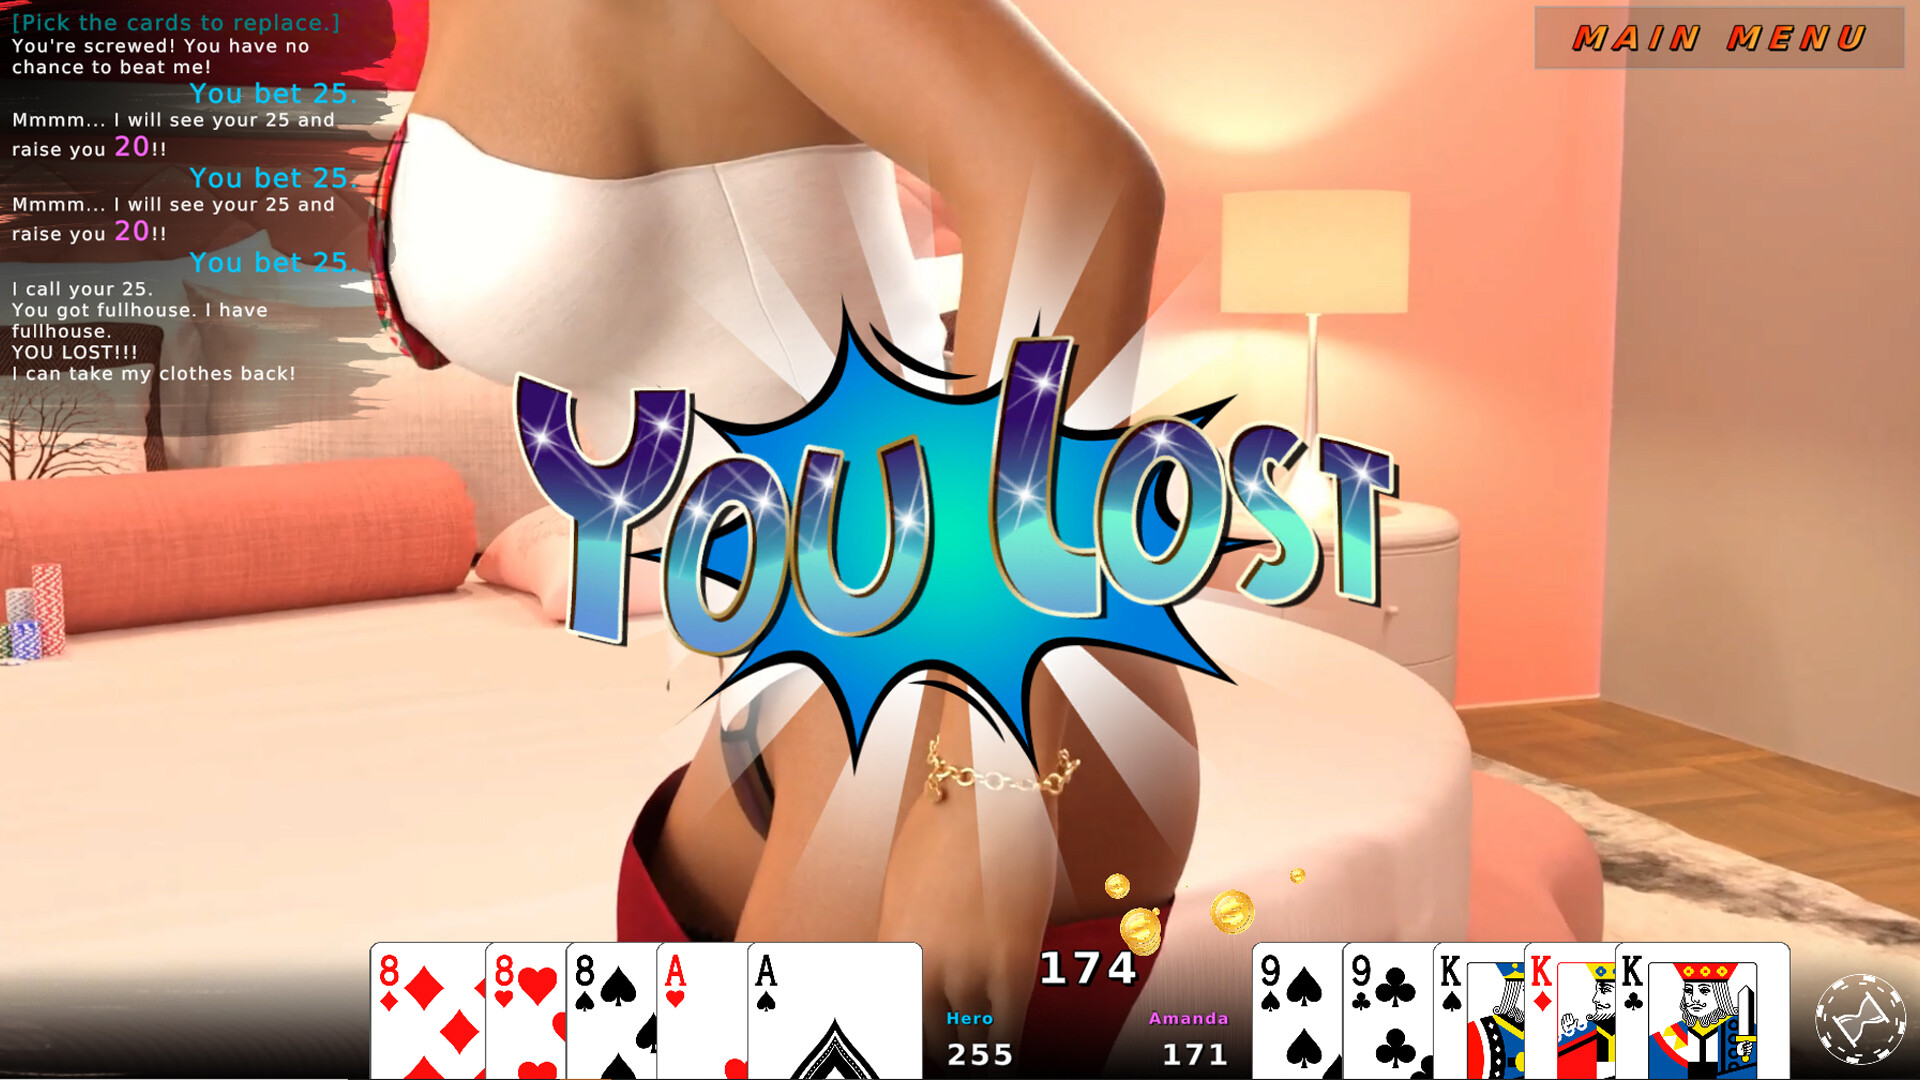 Spicy Strip Poker 2023-07-17 Gambler - free game download, reviews, mega